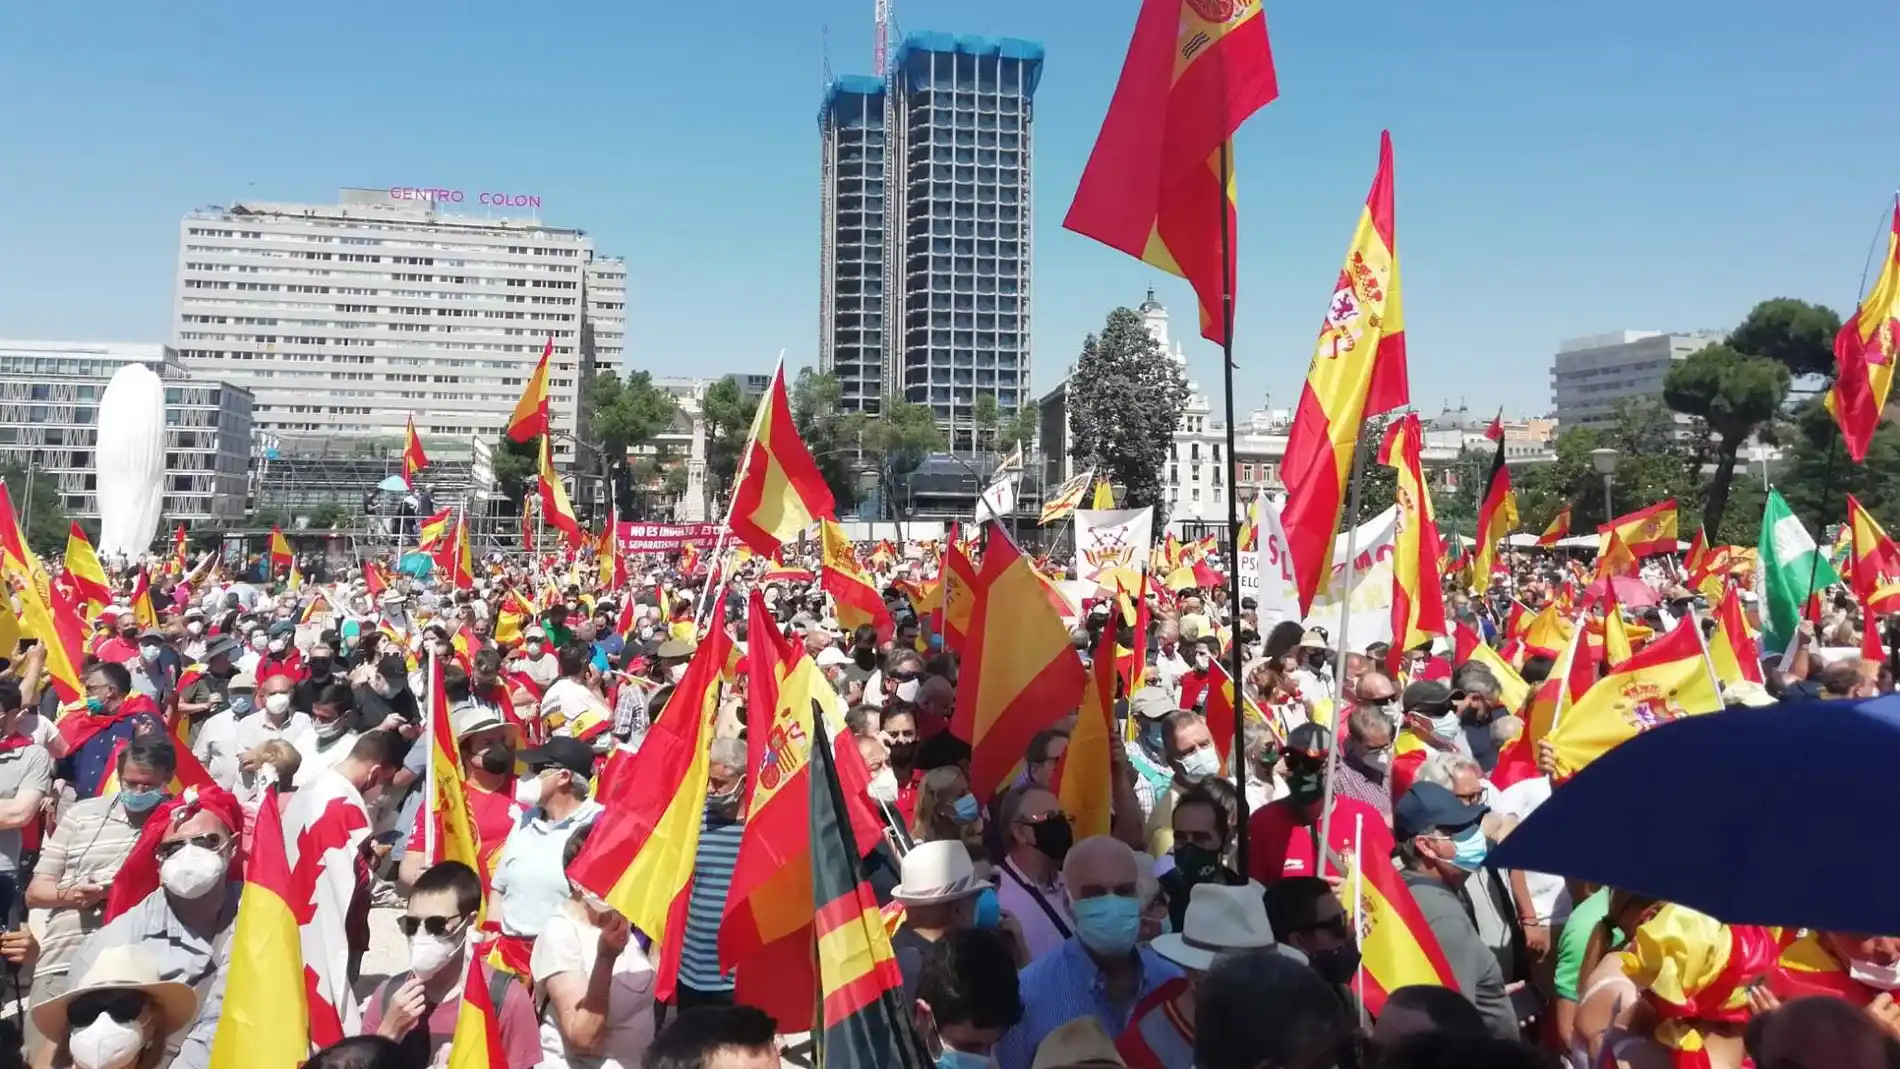 Manifestación en la Plaza de Colón de Madrid contra los indultos a los condenados por el 'procés'